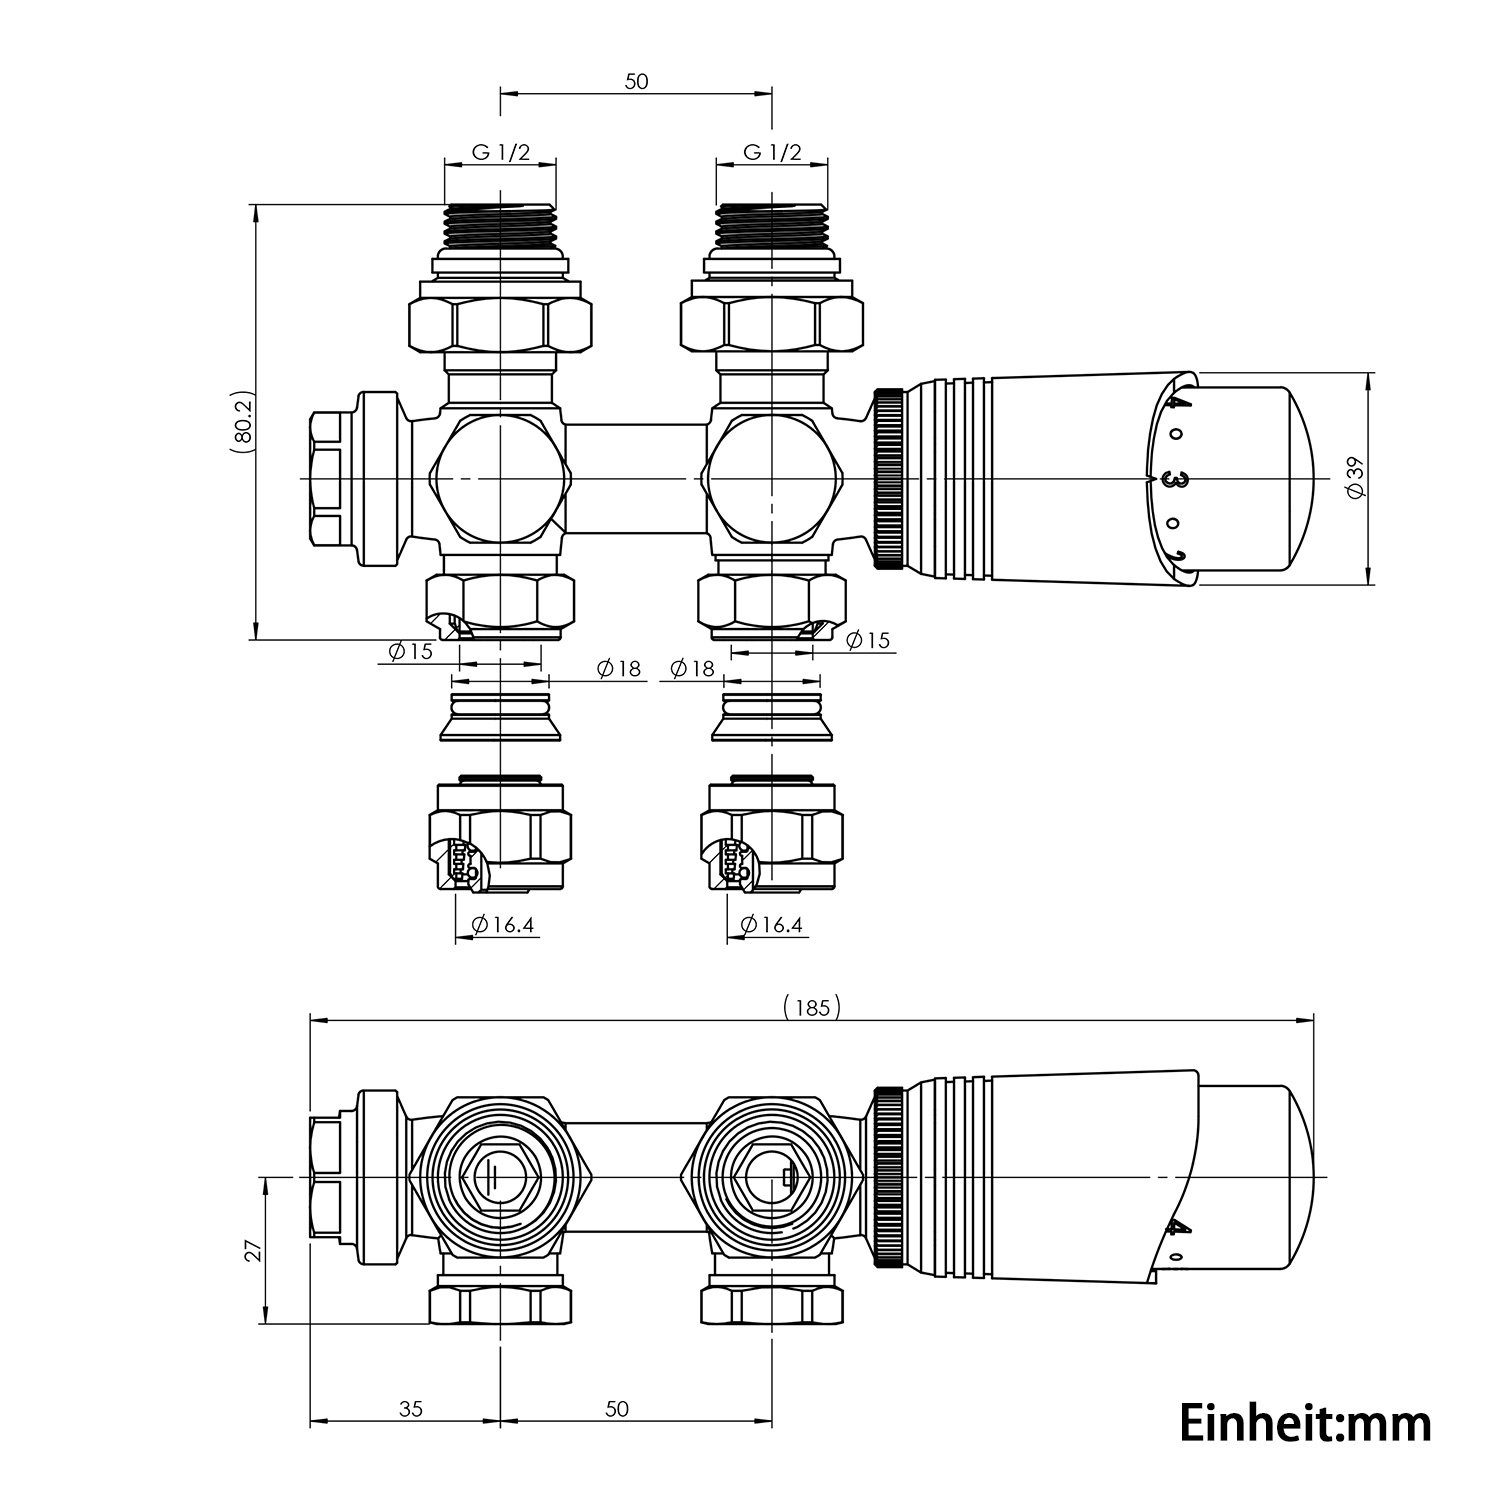 Multiblock Heizkörper 50mm Set mit Anschlussarmatur Eck- Thermostatkopf, für G 1/2", G und 1/2" ELEGANT Durchgangsform 50mm mit Thermostatkopf, Chrom Heizkörperthermostat